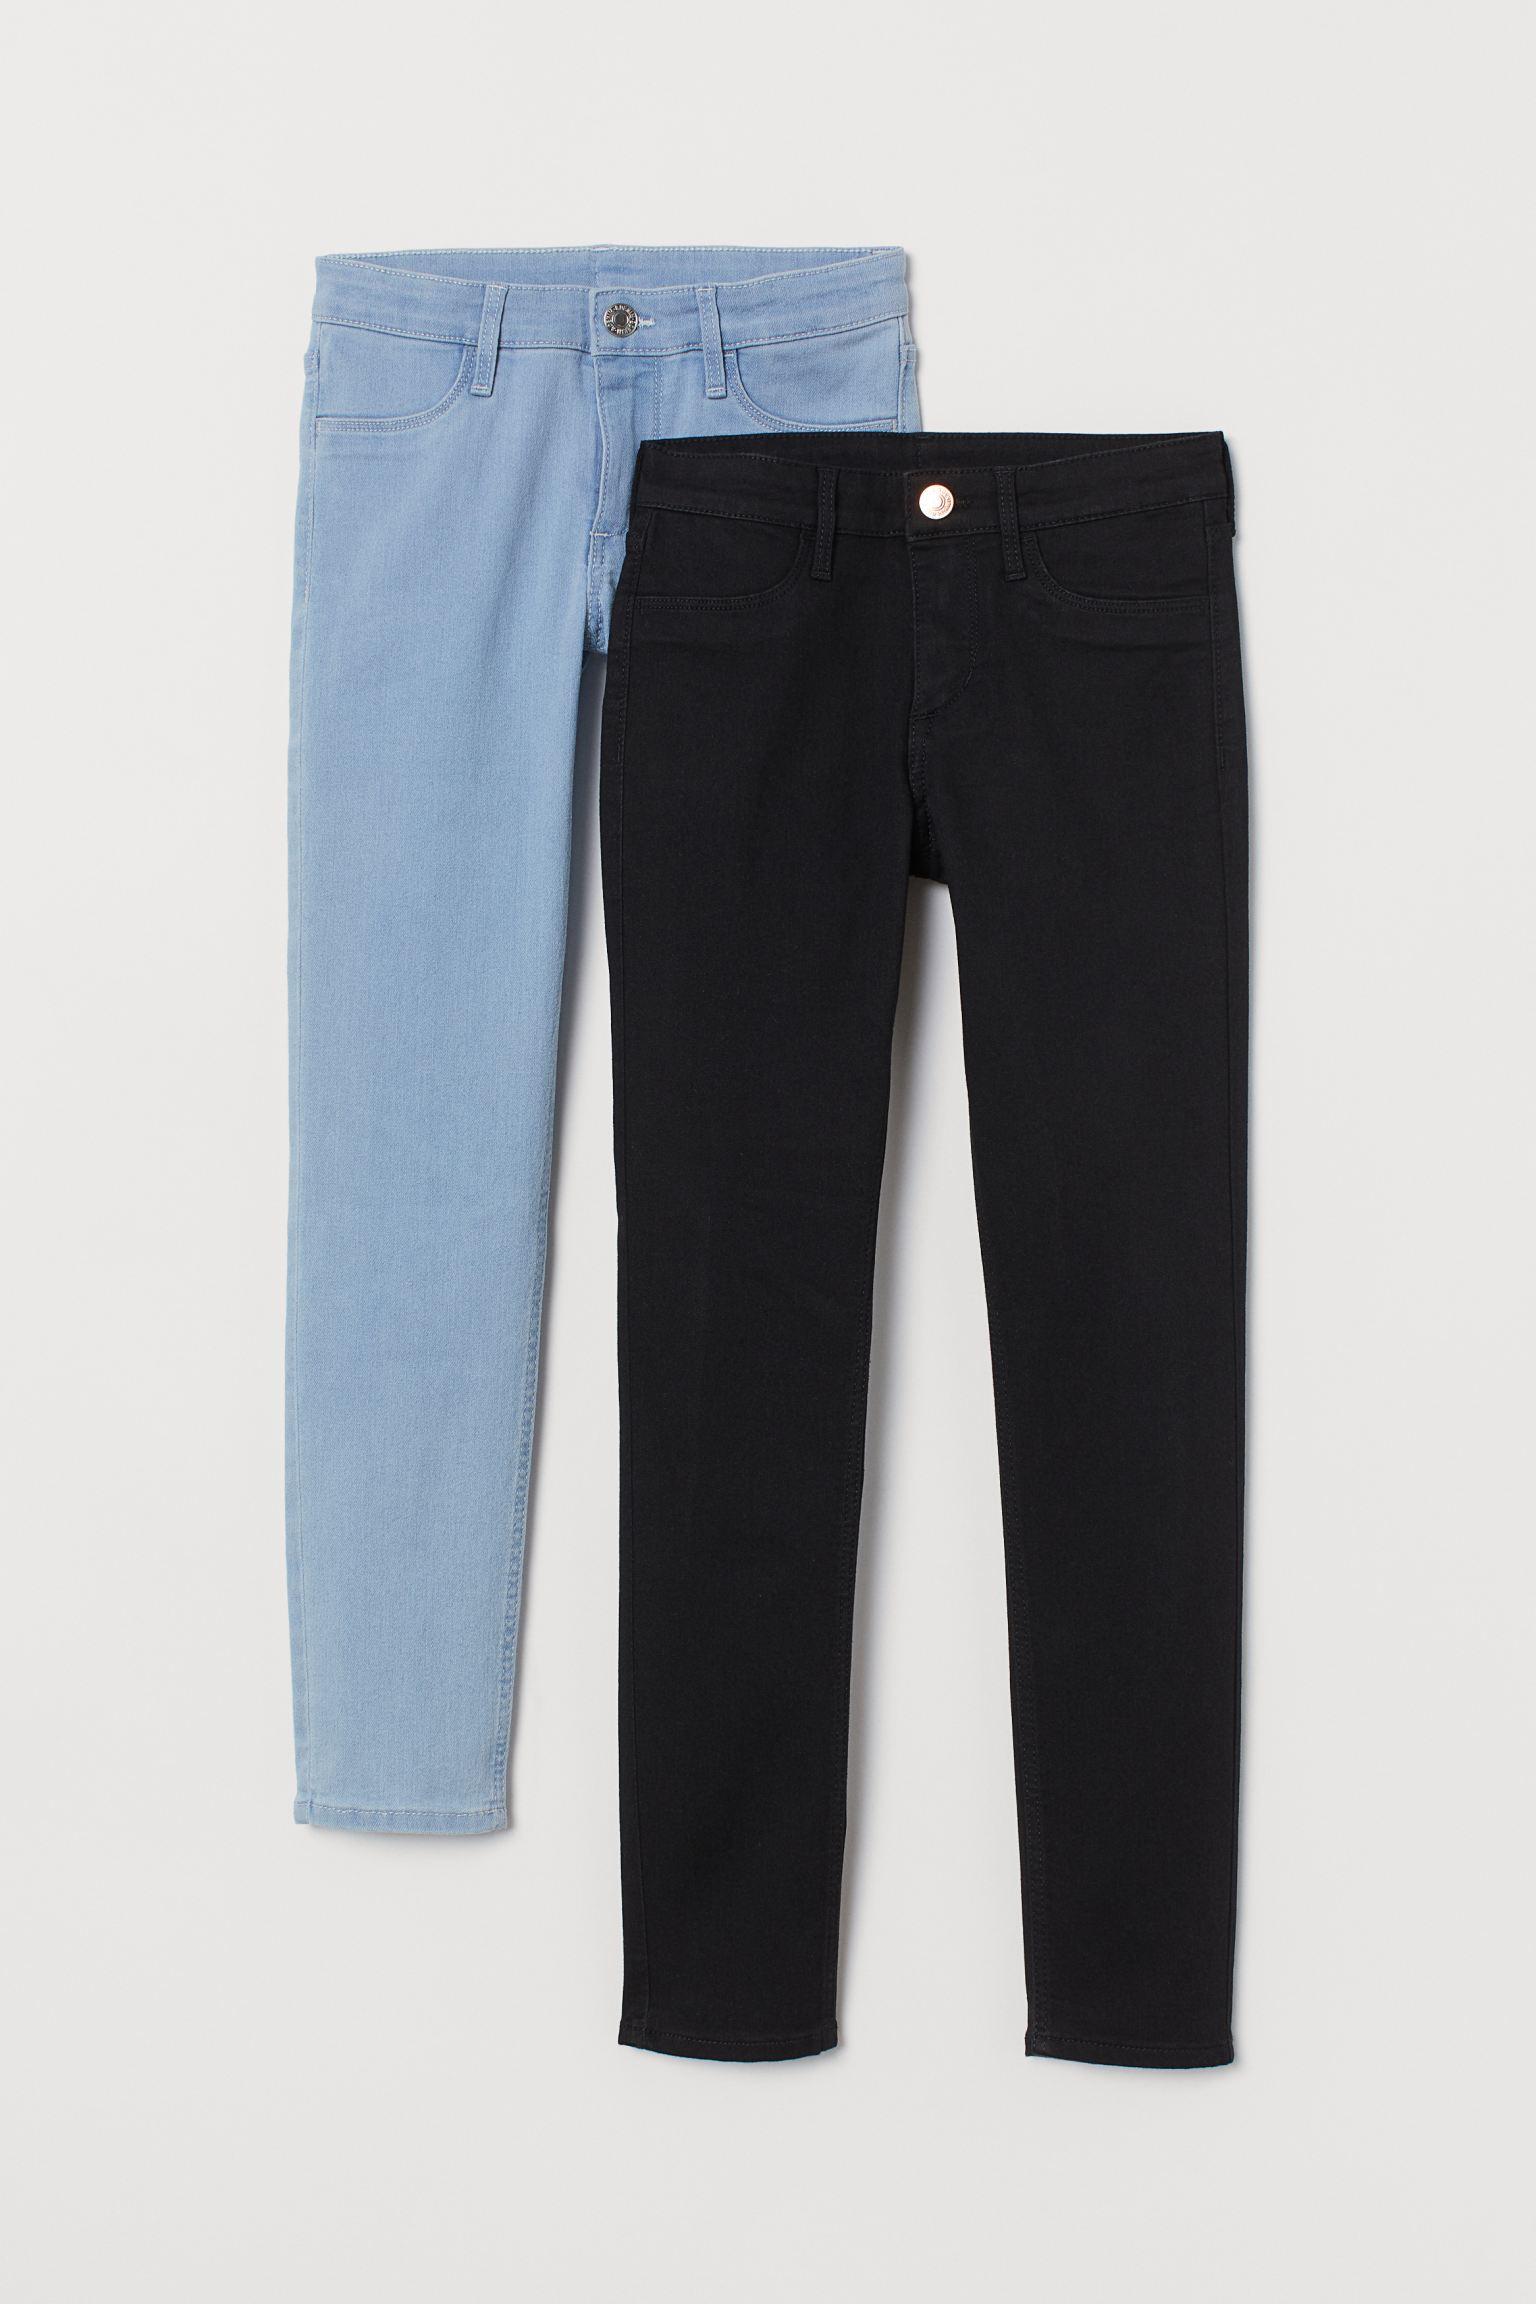 Отзыв на 2-пары узкие джинсы Fit Джинсы из Интернет-Магазина H&M